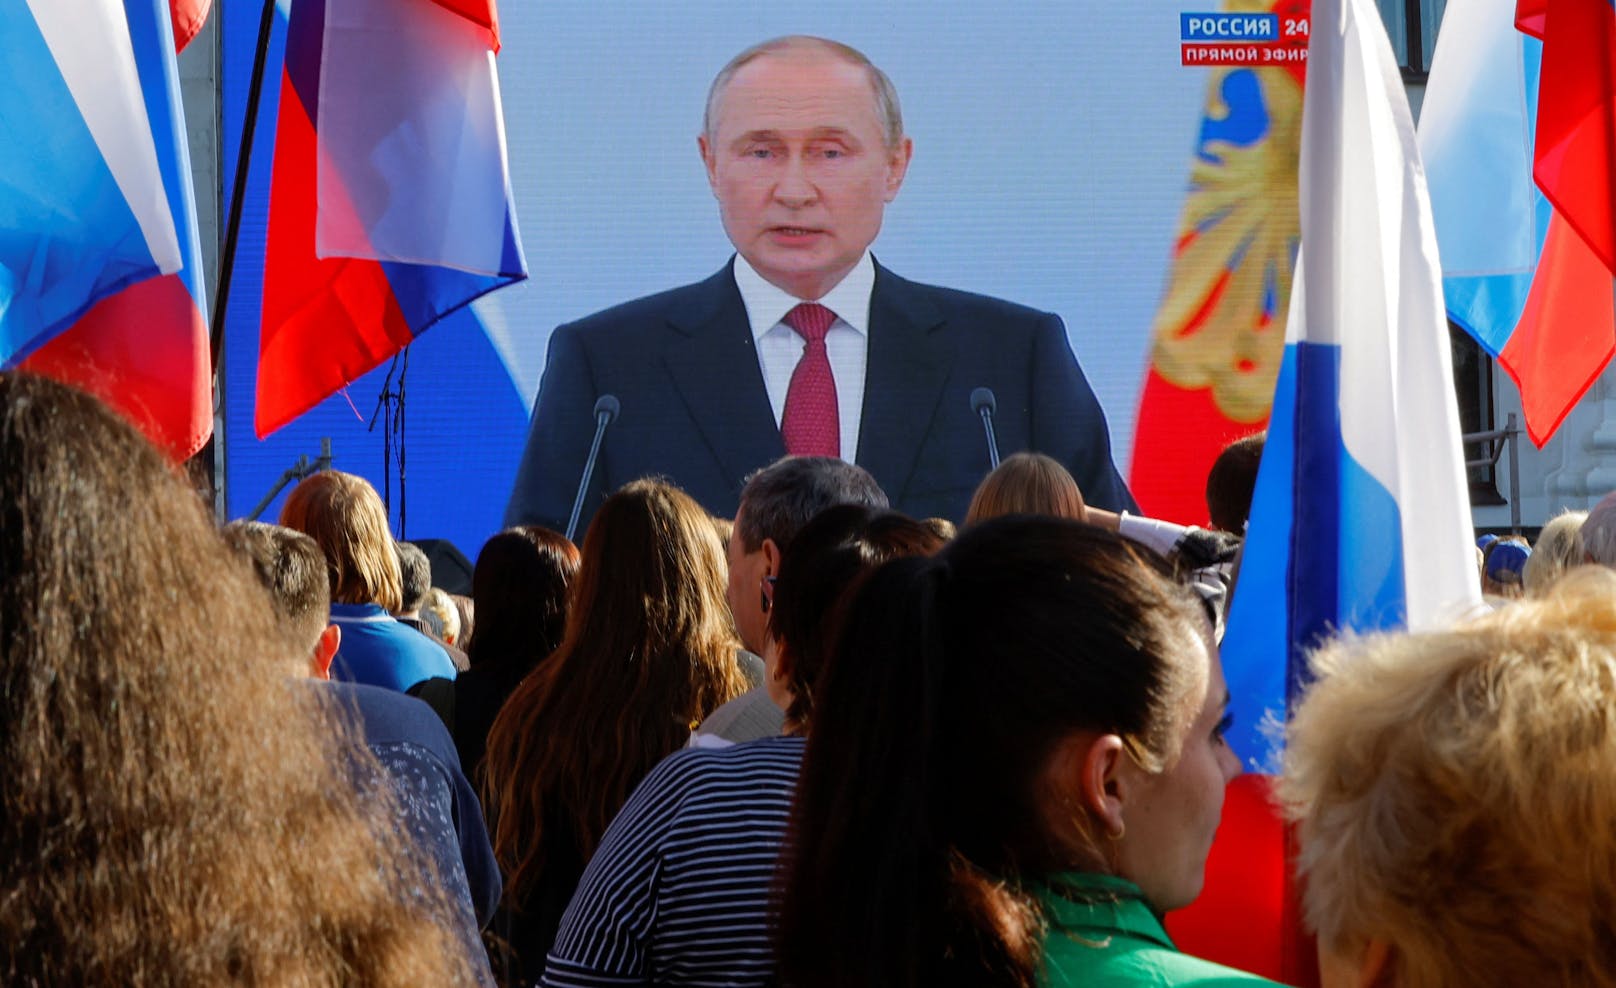 Auf einem riesigen Bildschirm am Roten Platz wurde die rede von Wladimir Putin übertragen.